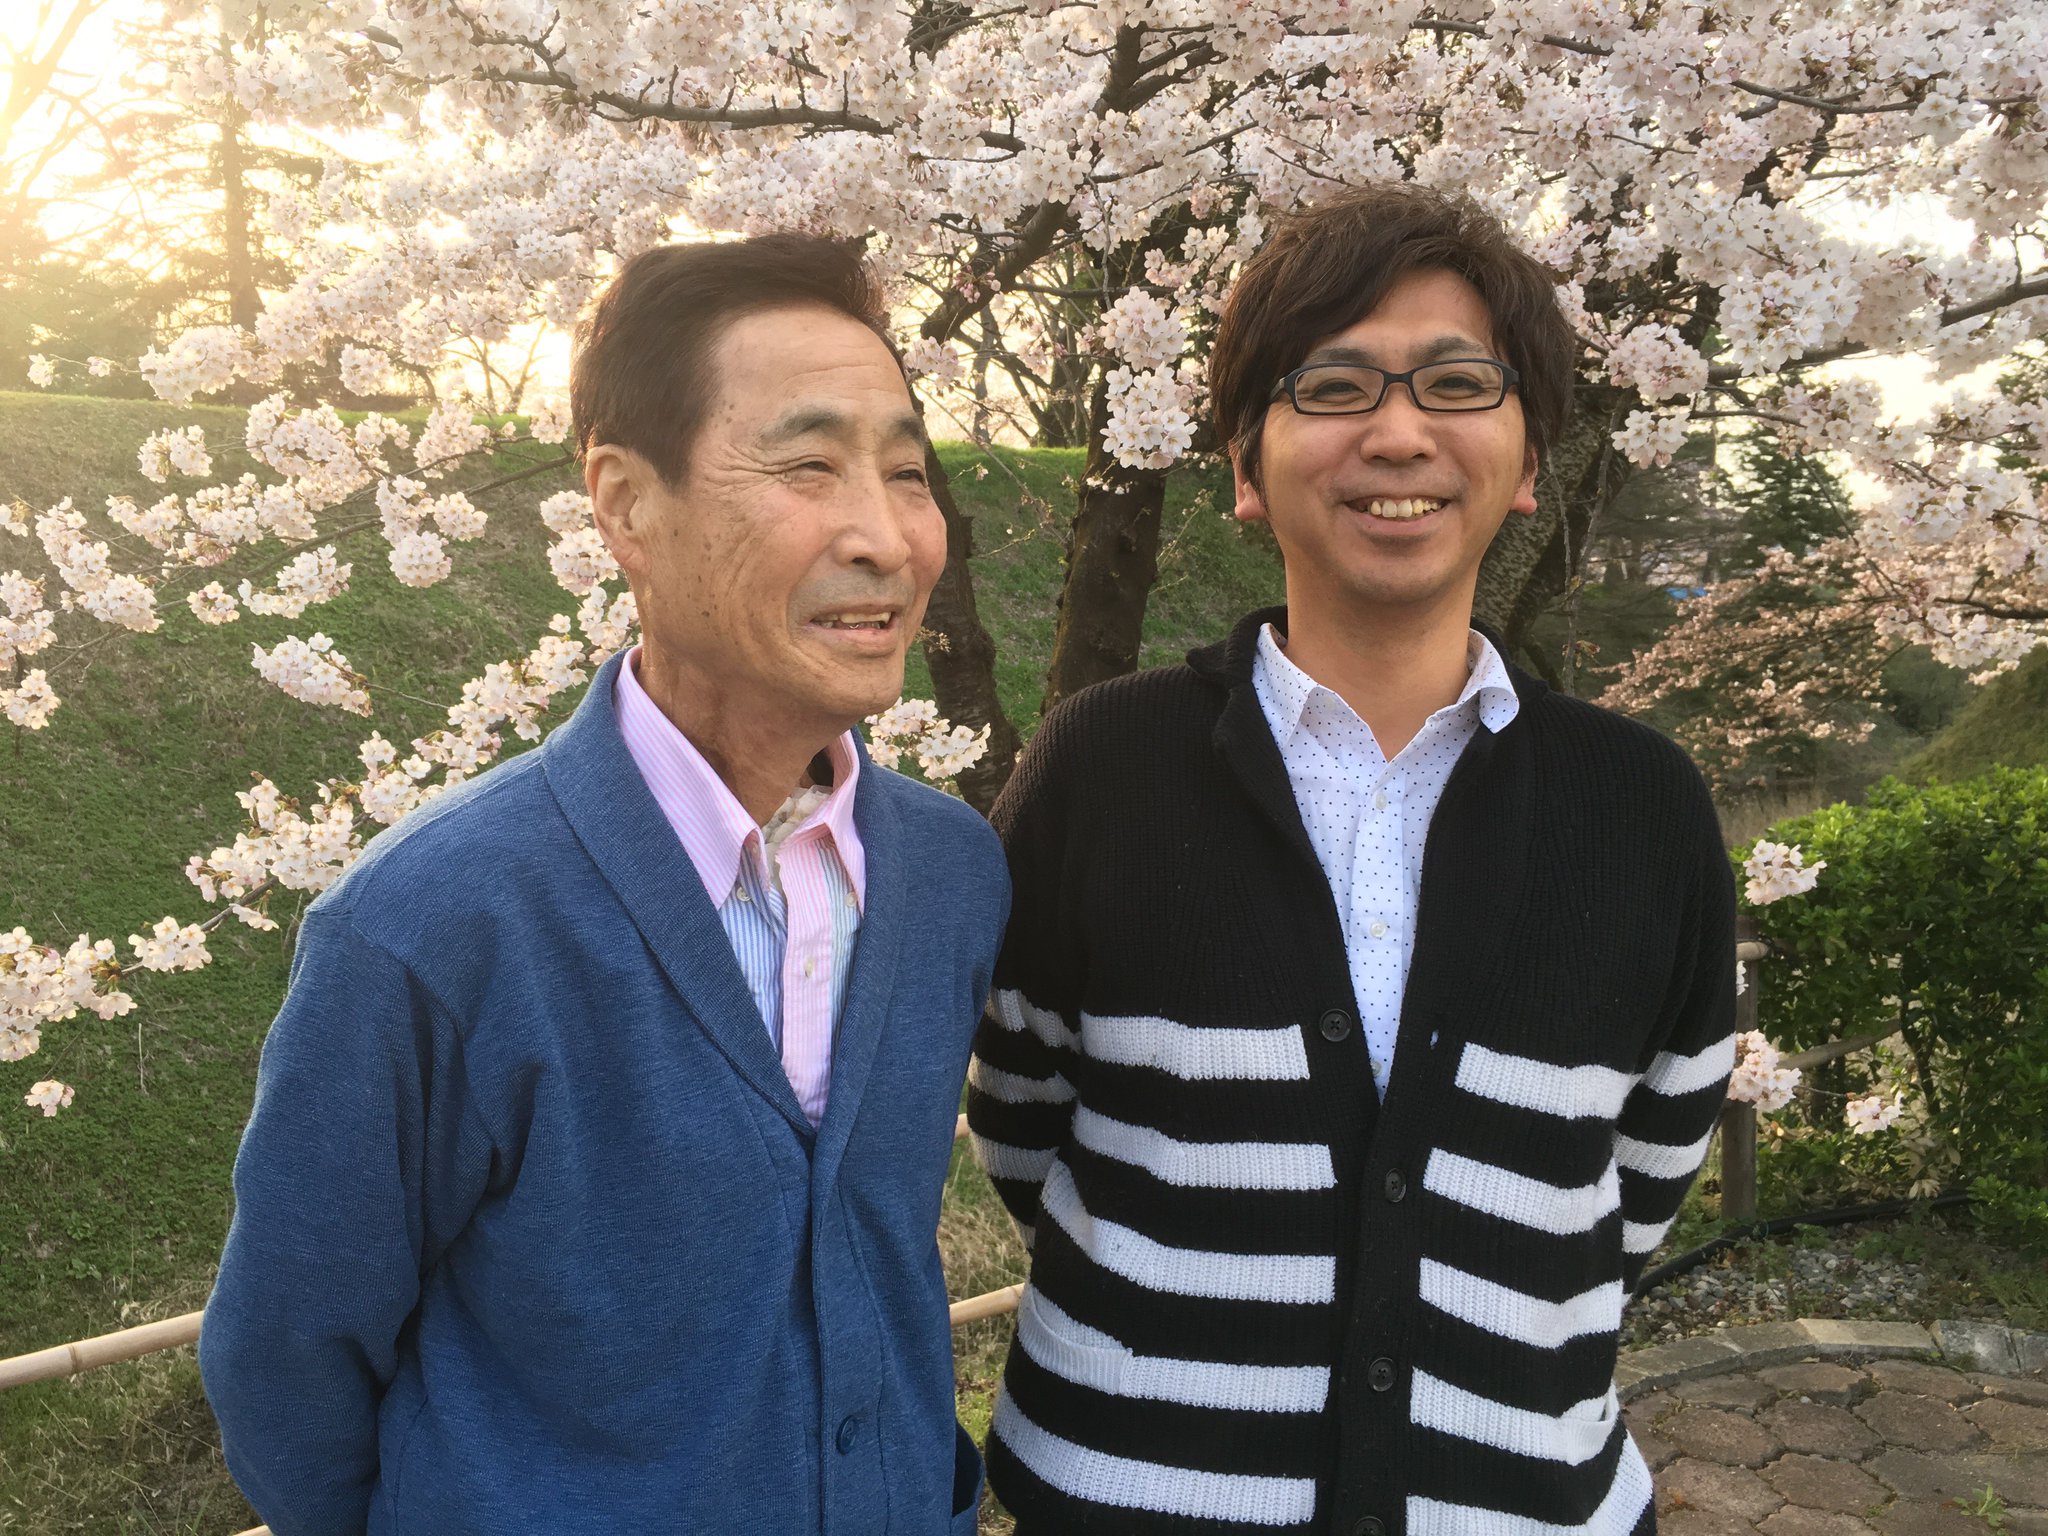 Mr.ハタは冬を越せると思っていなかった。でも今、こうして息子と桜を見ている。(1年前の英語版ツイートを元に再現しています) https://t.co/E1xIQvUK27